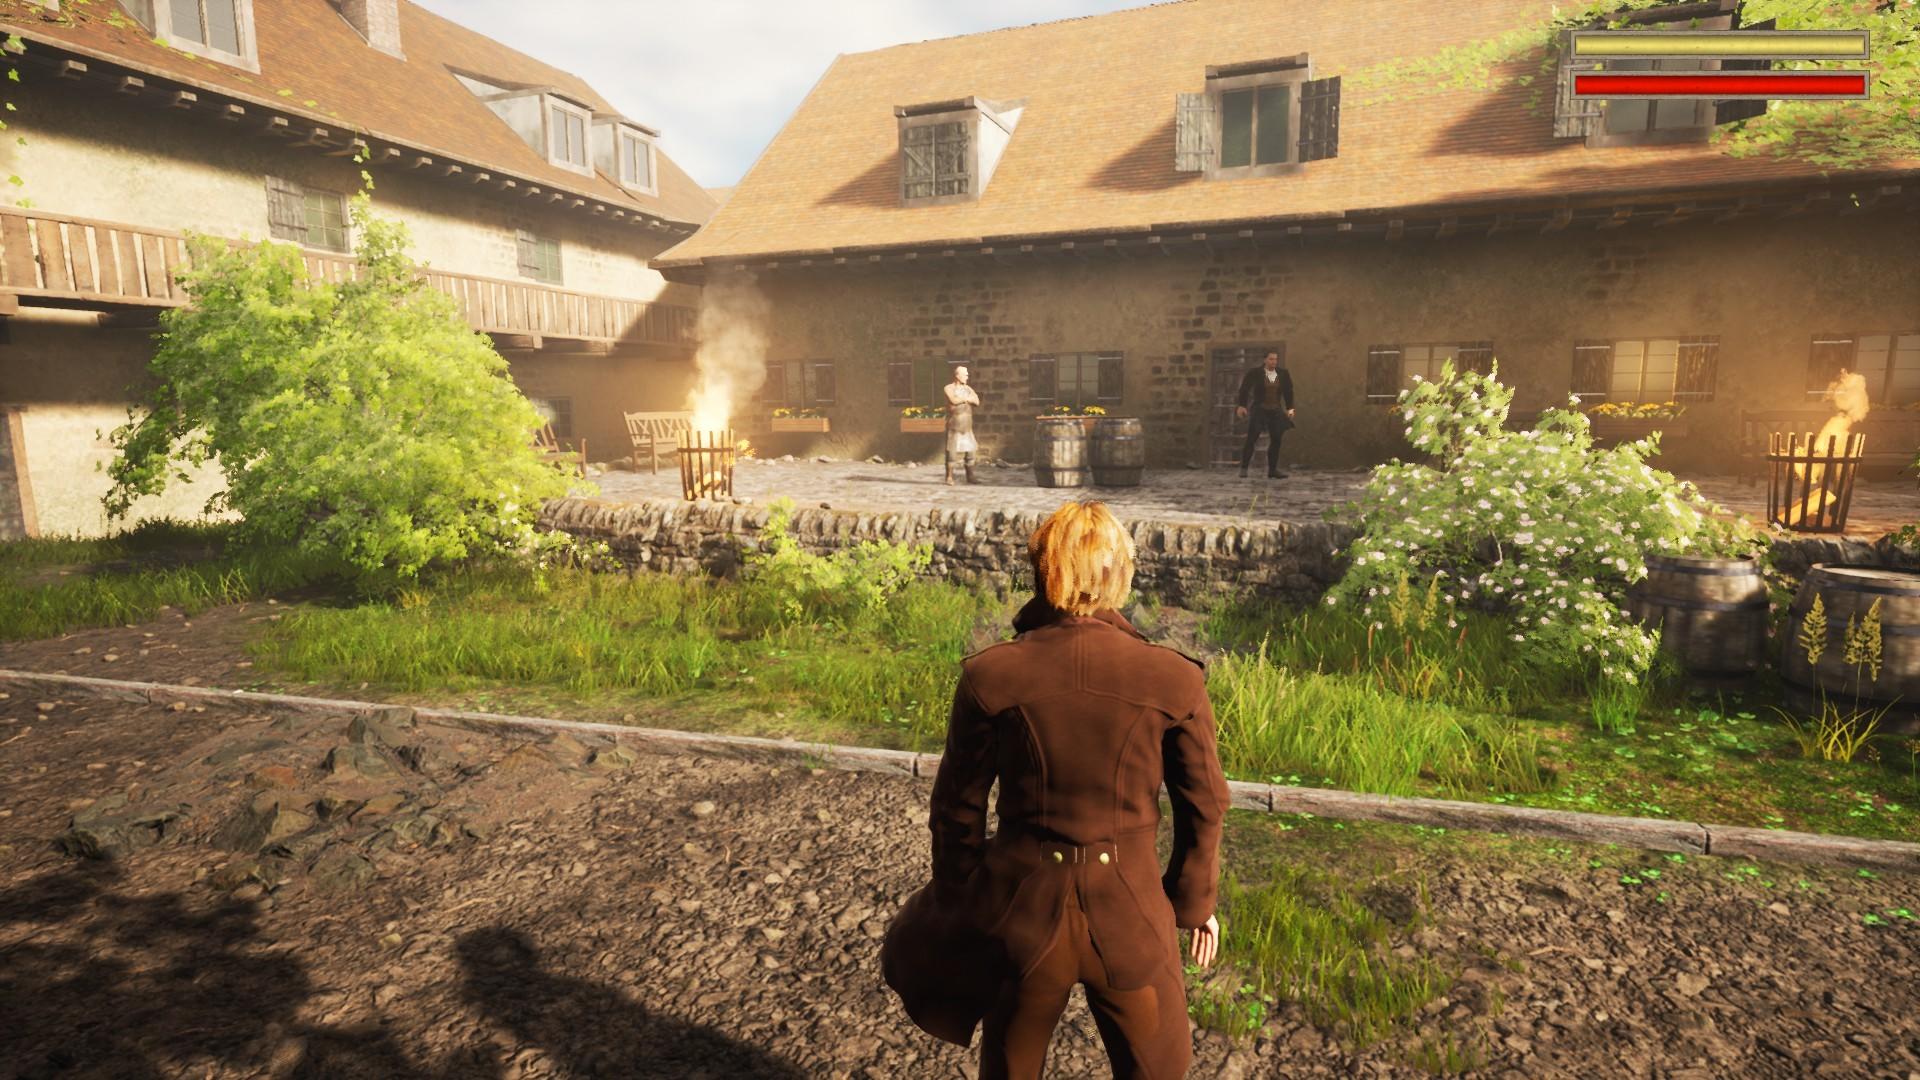 Inspector Schmidt - A Bavarian Tale screenshot game